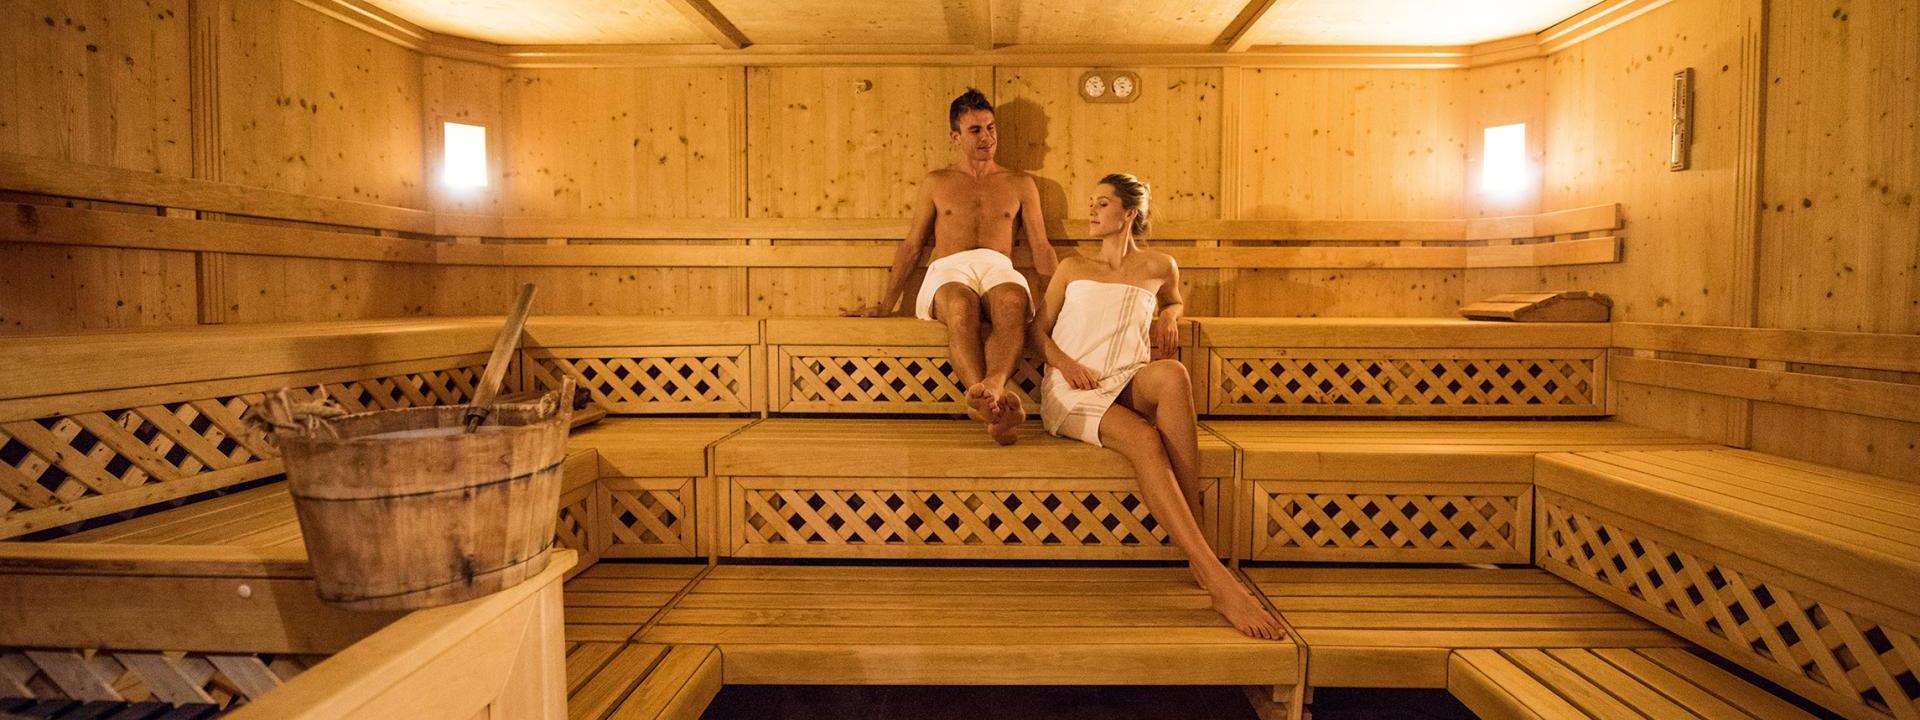 Guests in the Finnish Sauna